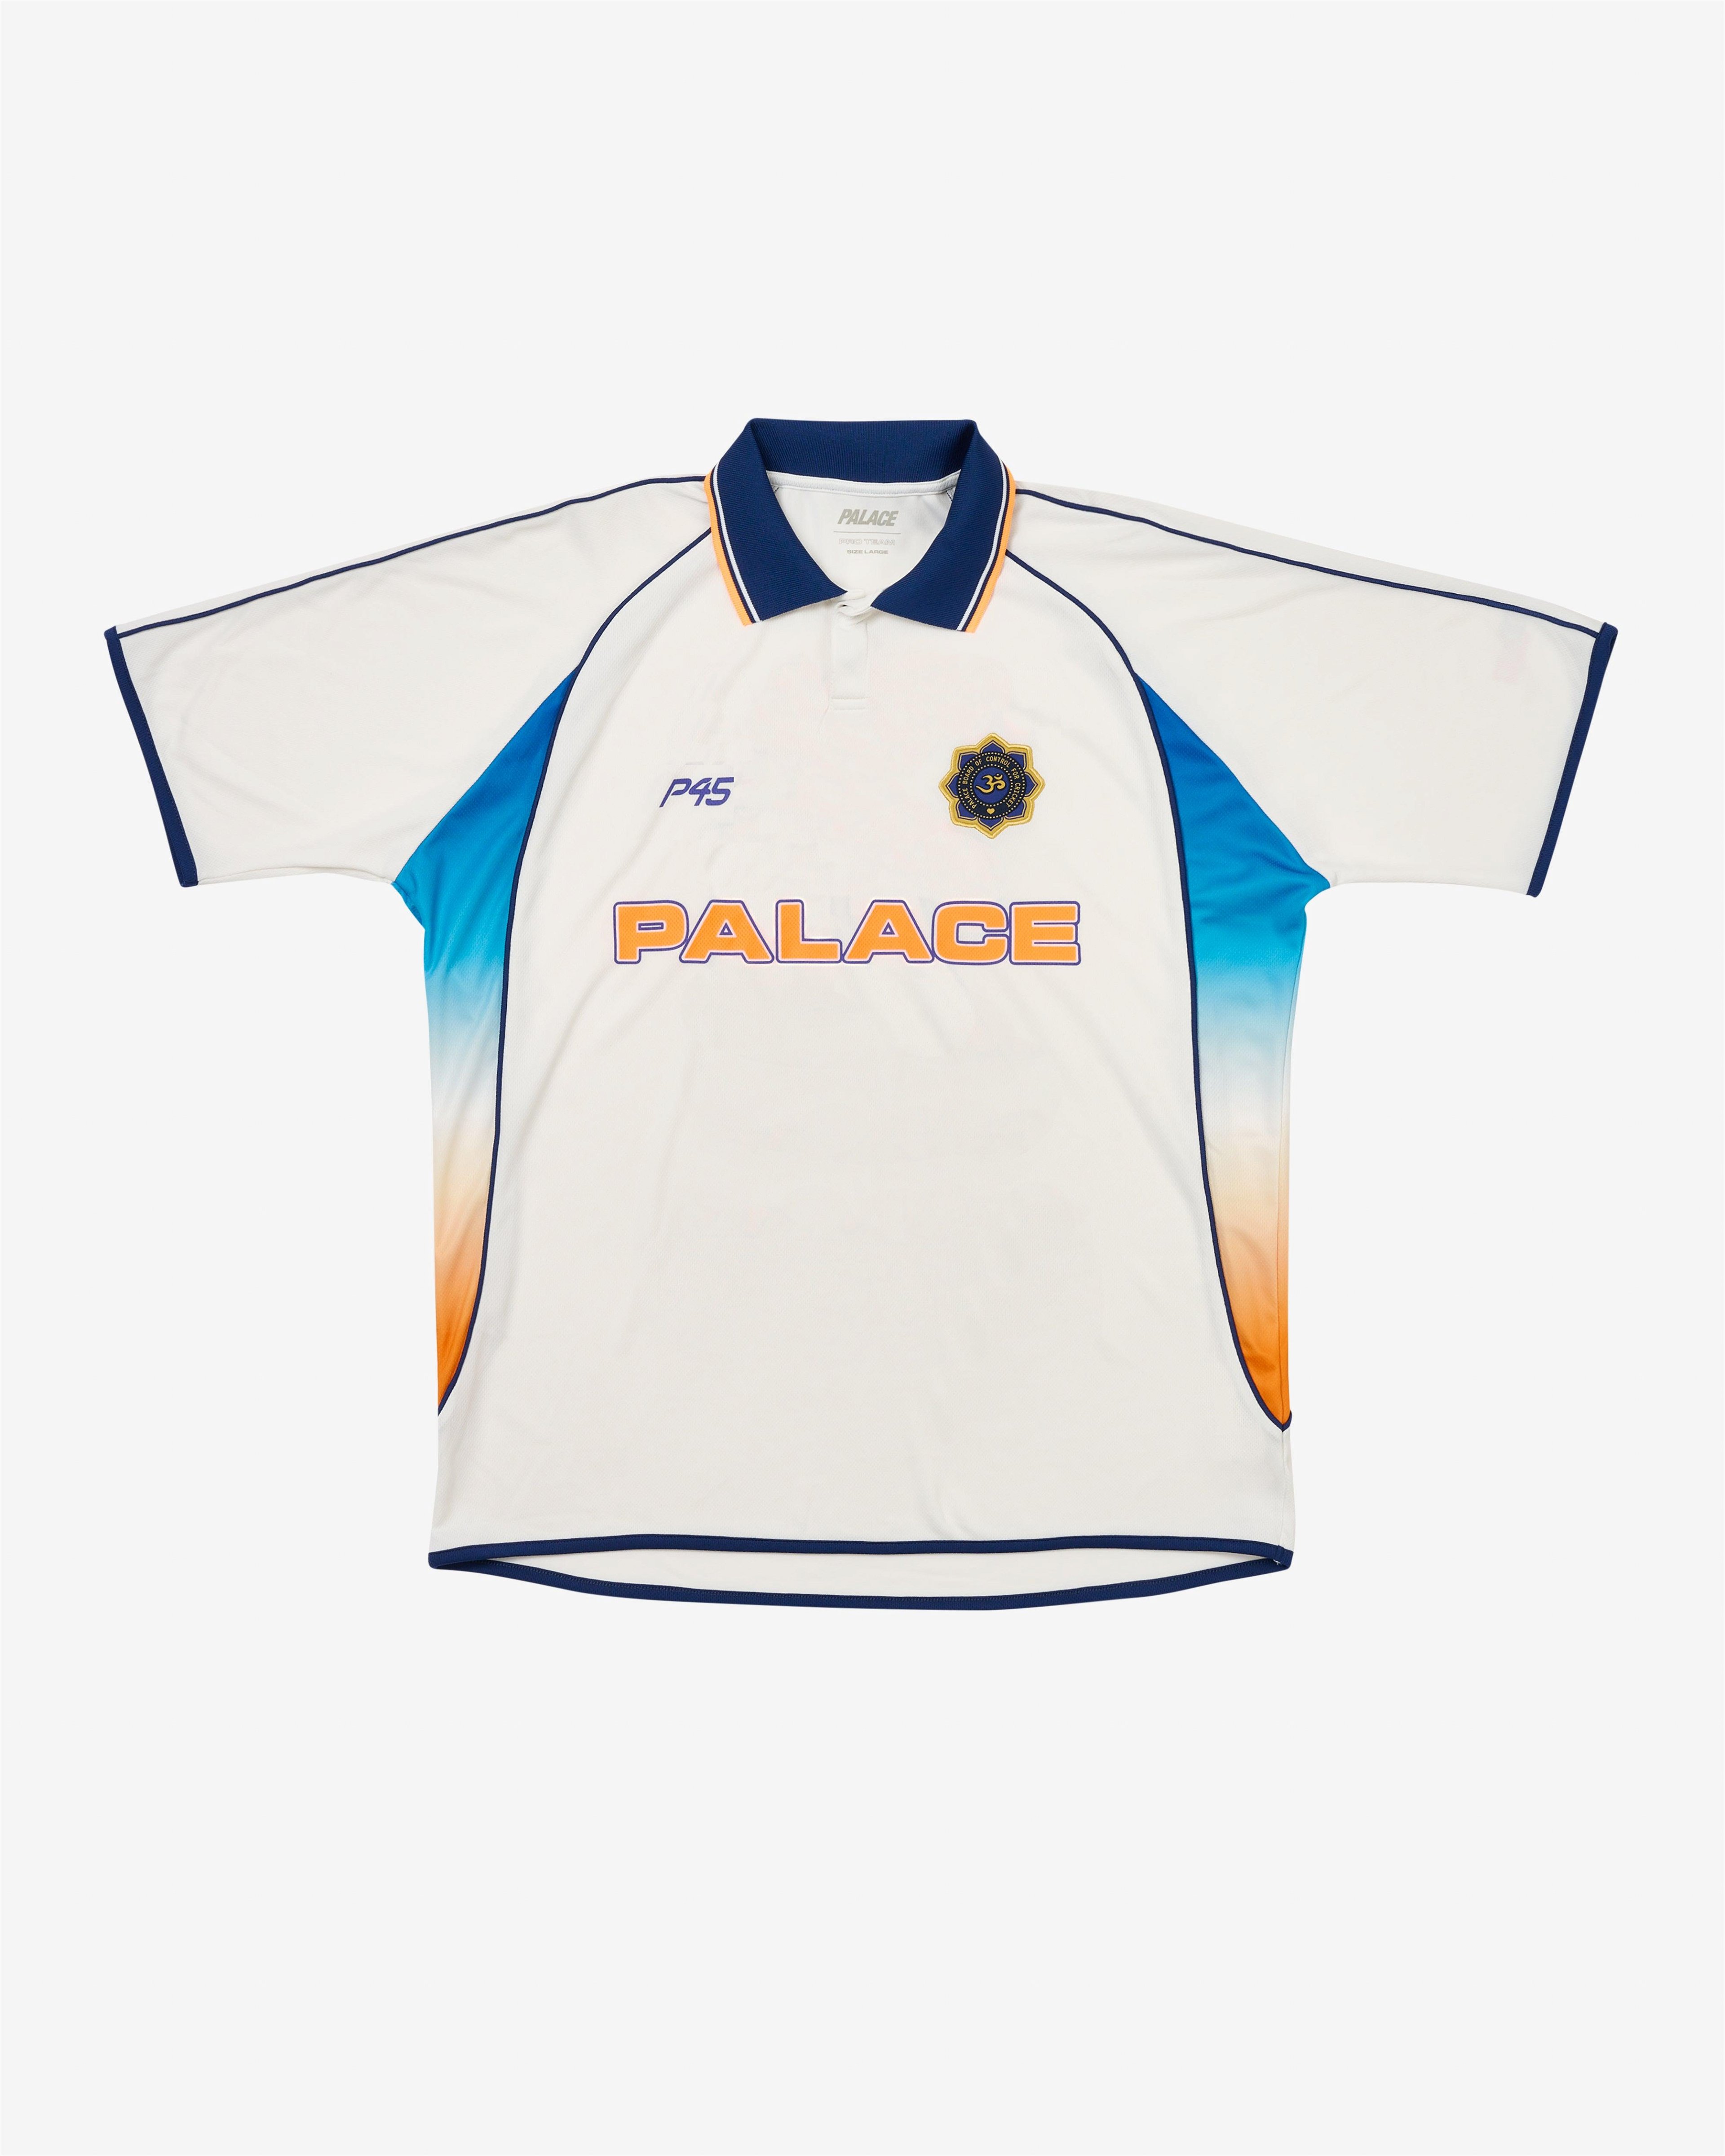 Palace - Men's Cricket Jersey - (White) by PALACE